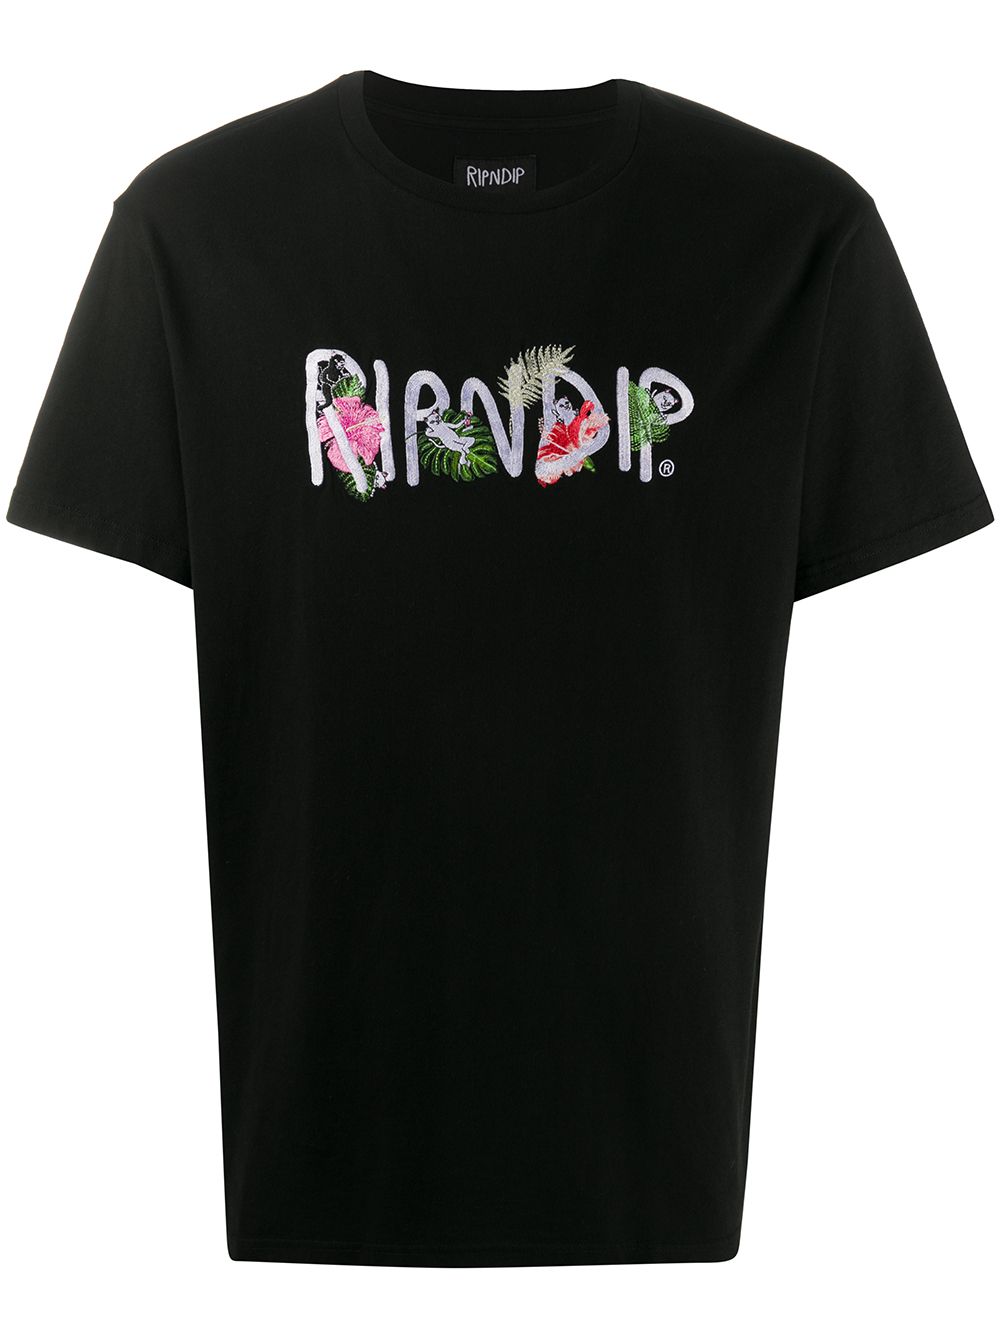 фото Ripndip футболка с логотипом